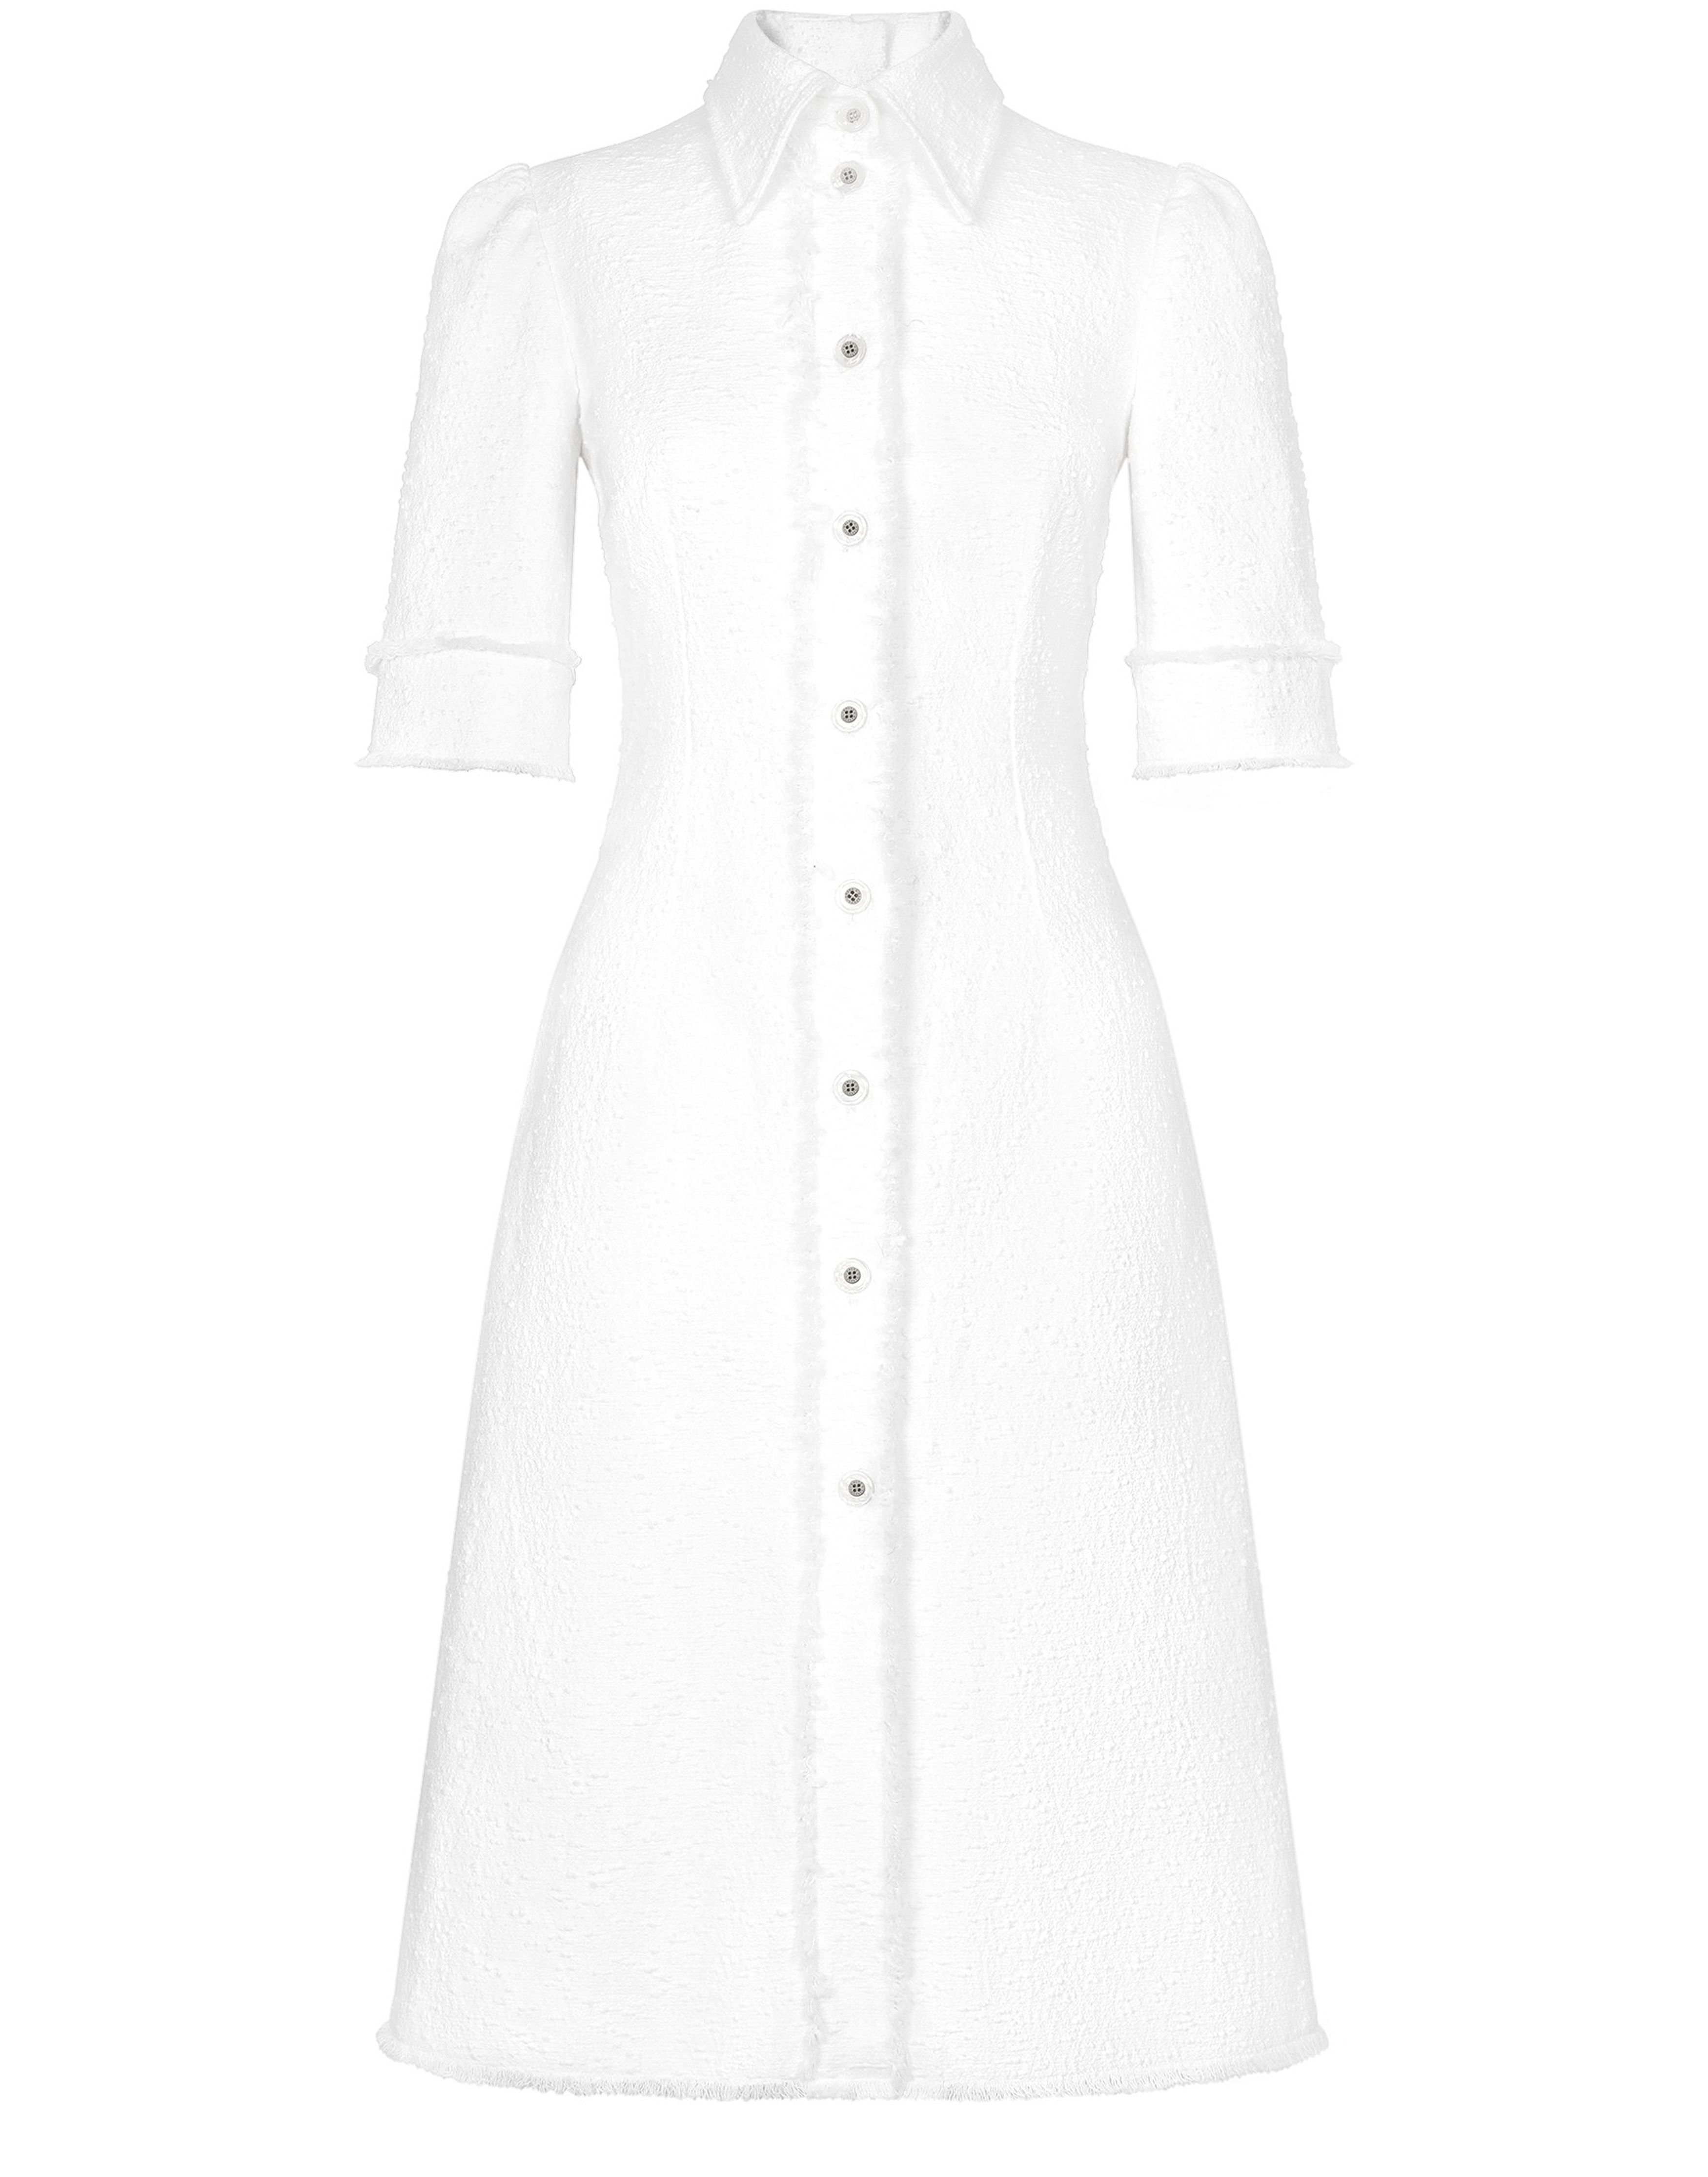 Dolce & Gabbana Raschel tweed calf-length dress